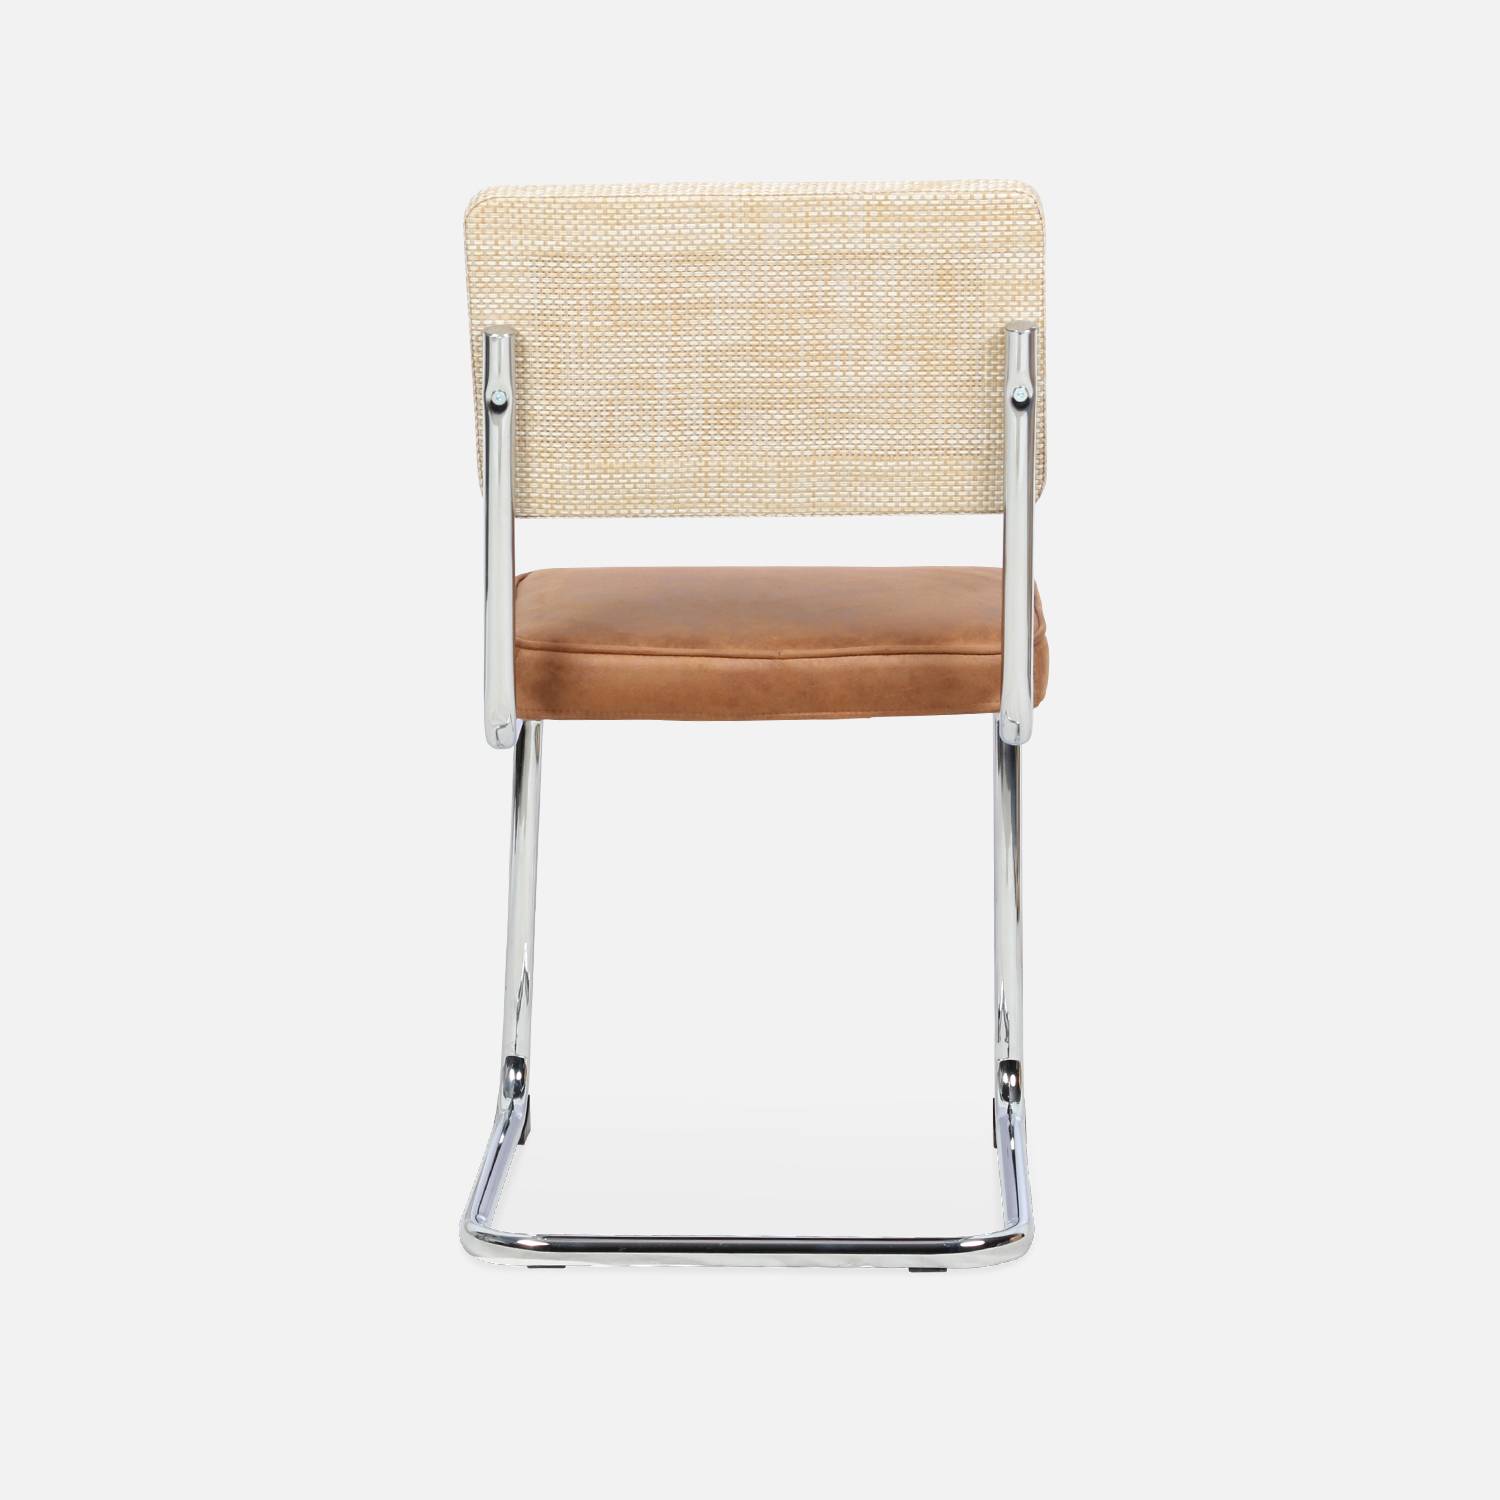 2 chaises cantilever - Maja - tissu marron clair et résine effet rotin, 46 x 54,5 x 84,5cm   Photo8